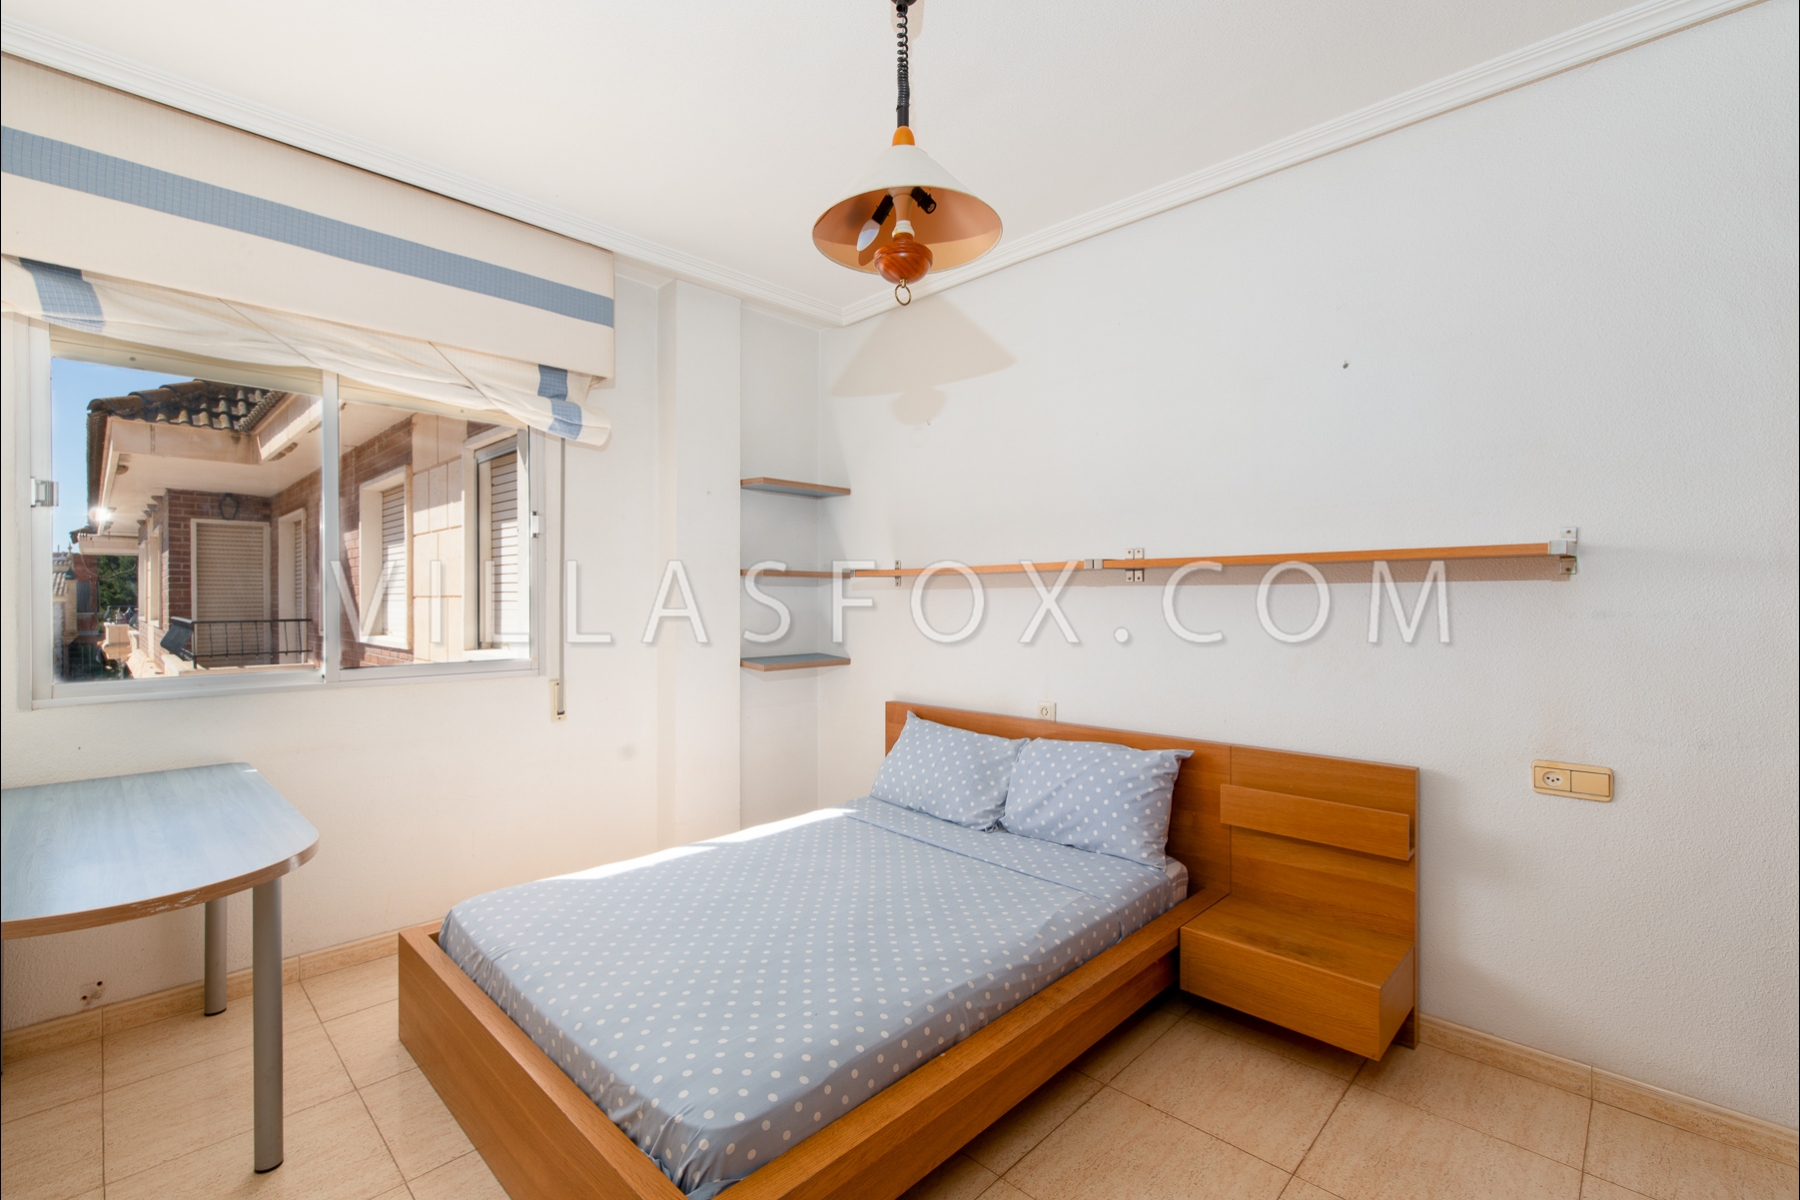 Jacarilla 3 bedroom apartment for sale Villas Fox-30